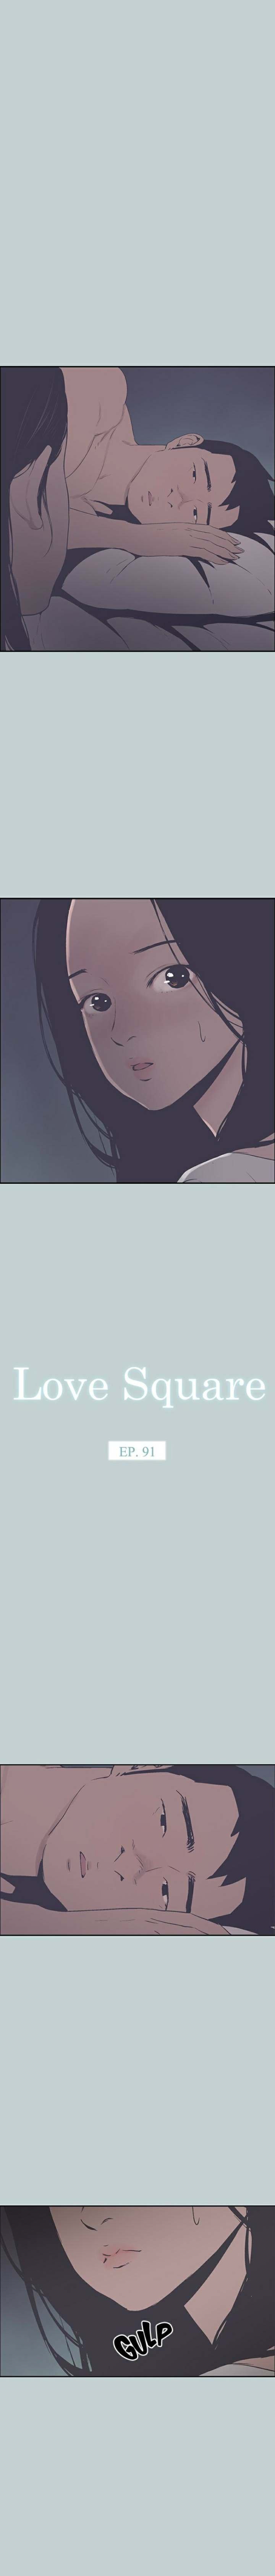 love-square-chap-91-0